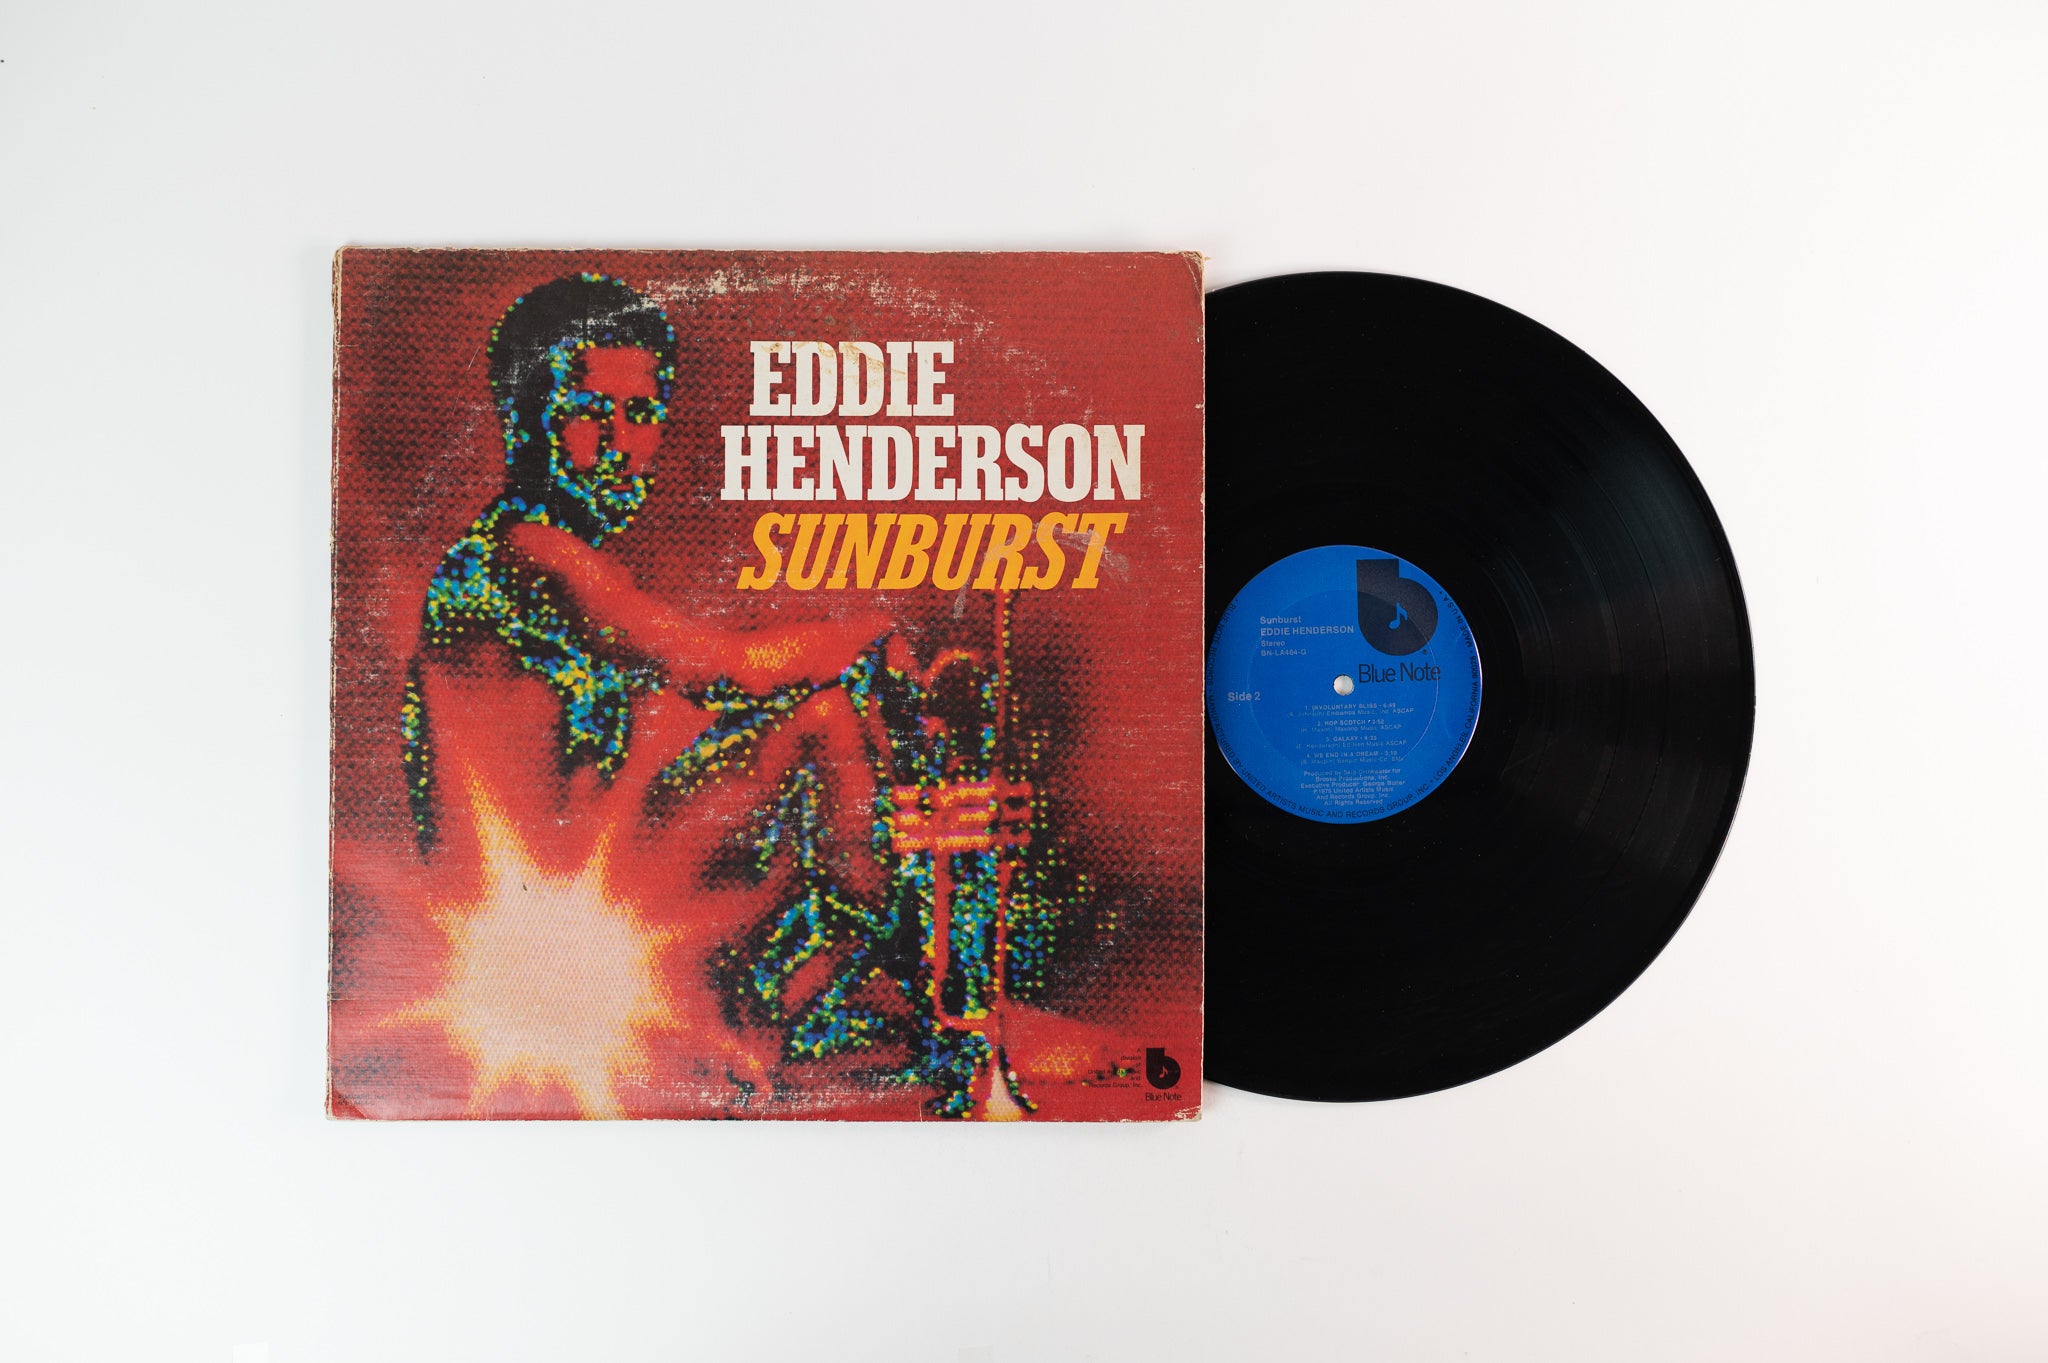 Eddie Henderson - Sunburst on Blue Note